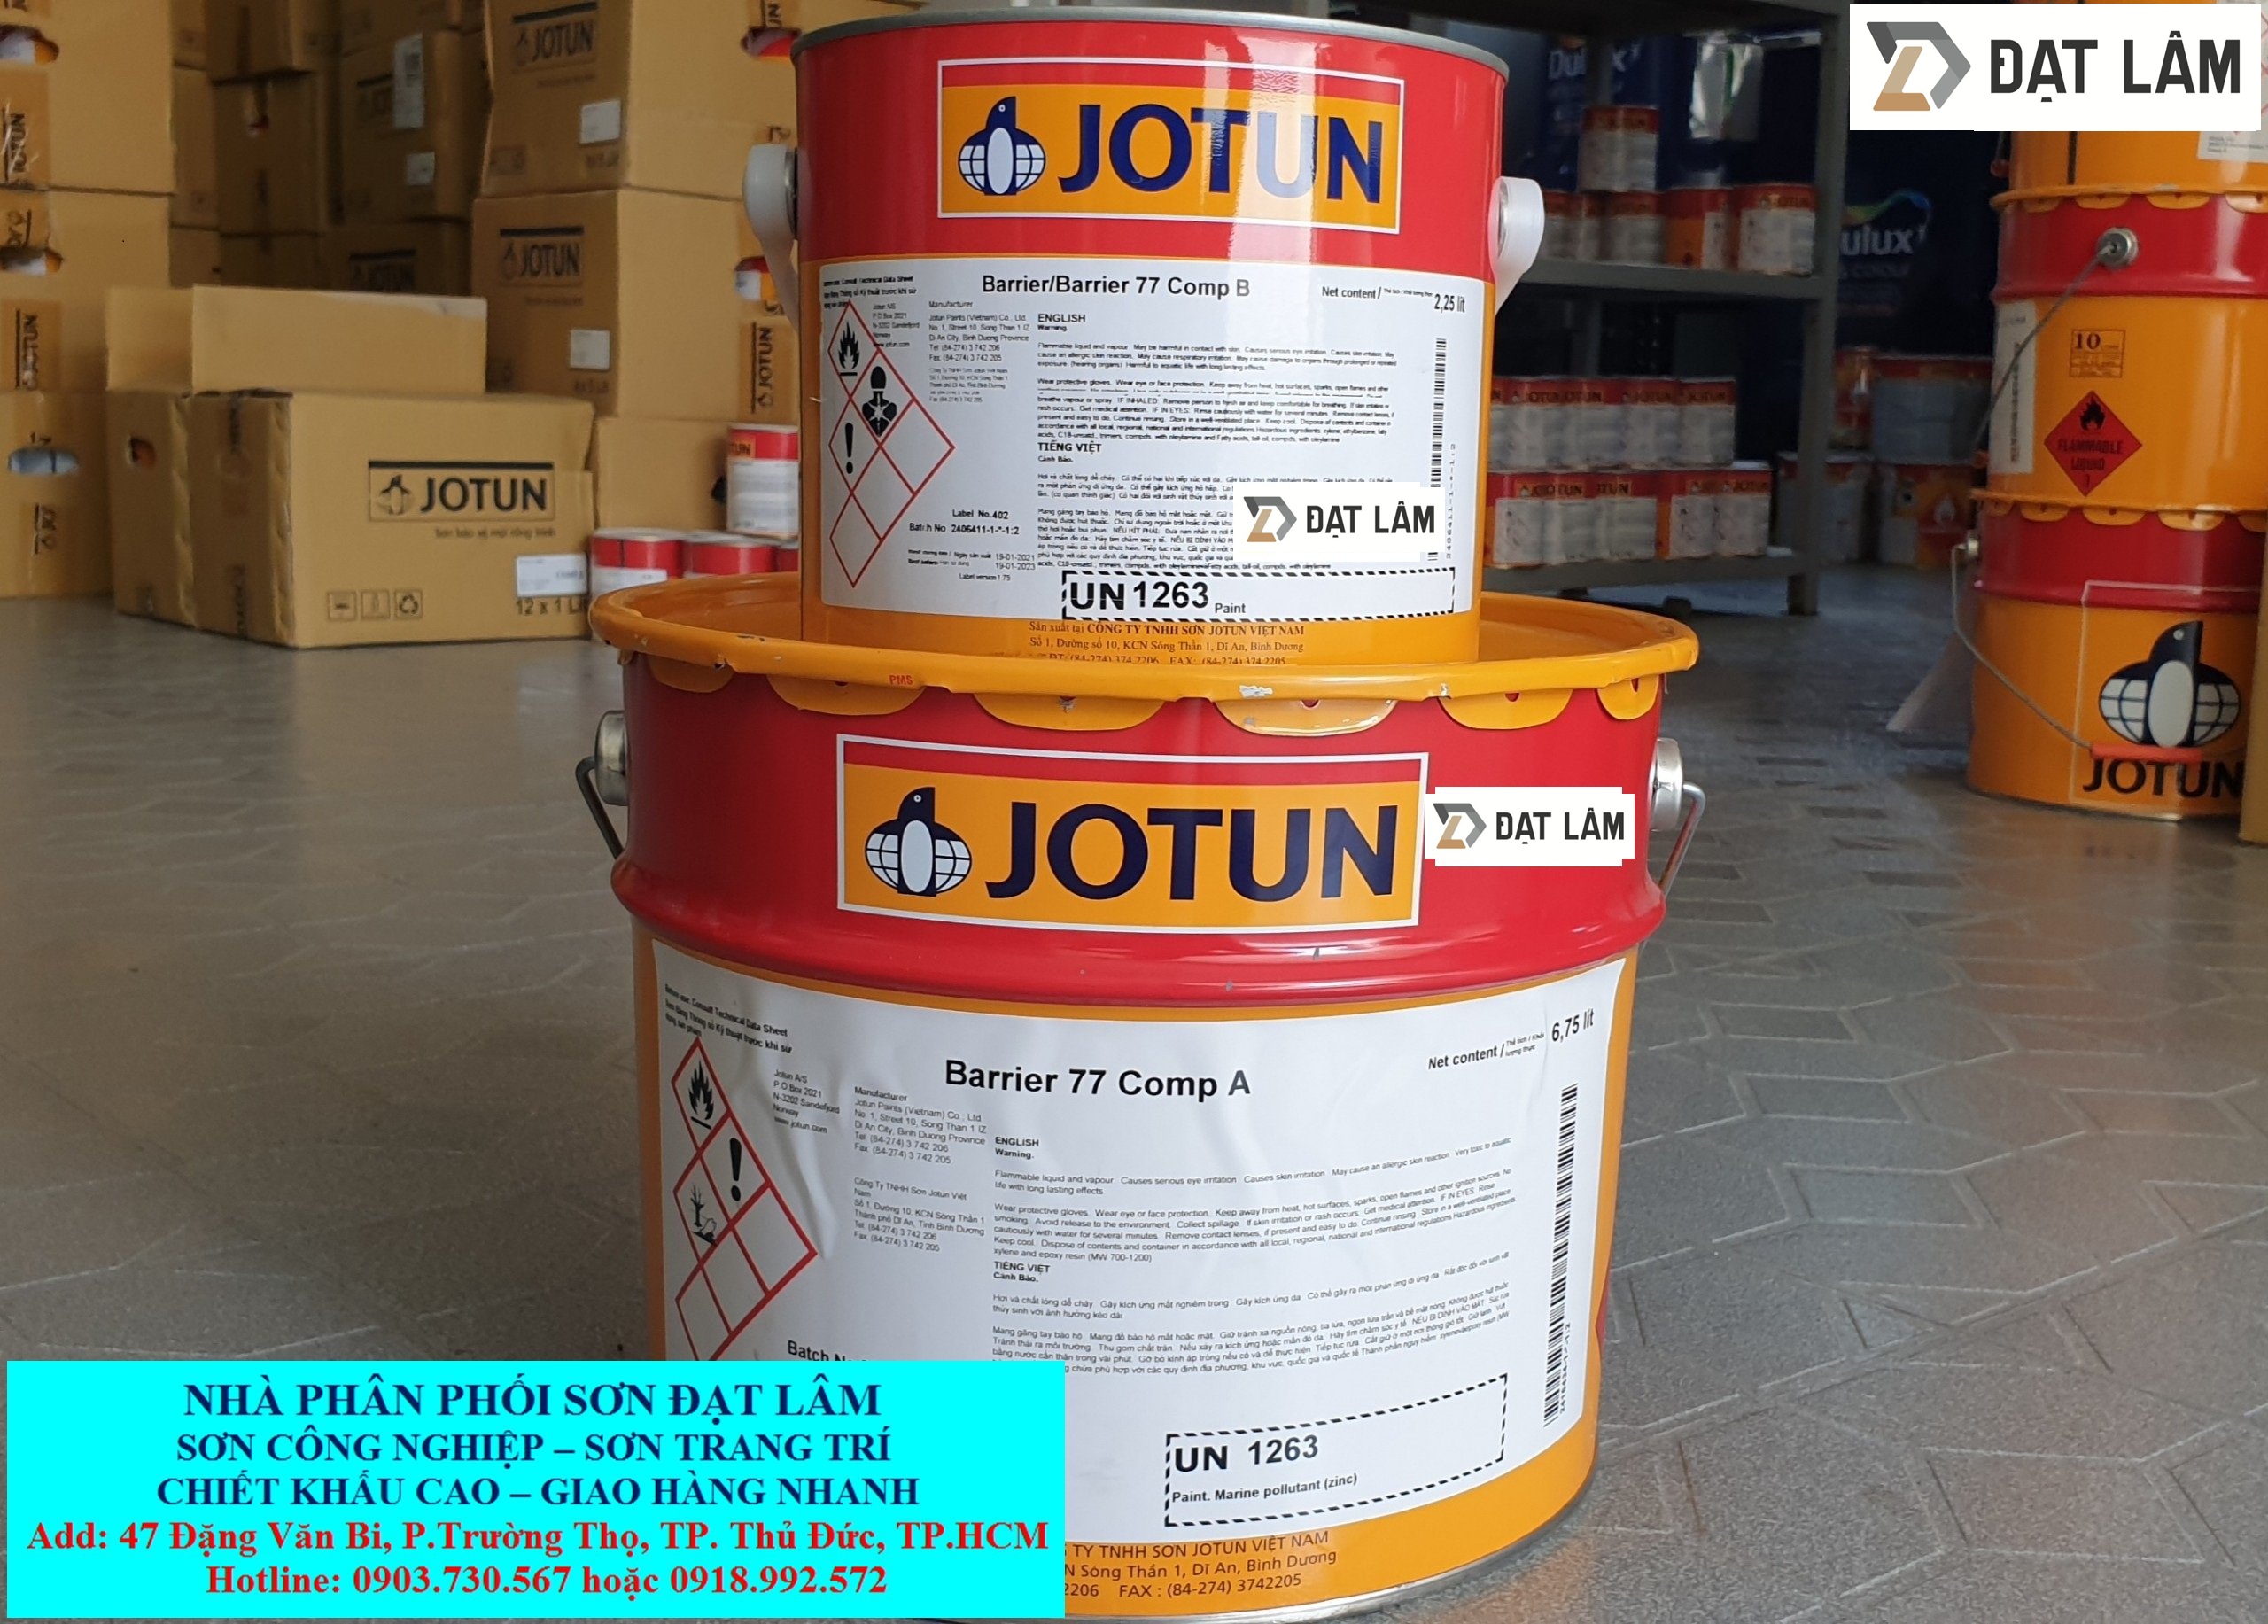 Với công nghệ tiên tiến, Jotun Barrier 77 là sơn công nghiệp chuyên dùng để bảo vệ các thiết bị và công trình khỏi sự phá hủy của môi trường như nước, độ ẩm, hóa chất, ... Hãy xem hình ảnh để khám phá thêm về sự hiệu quả của sản phẩm này.